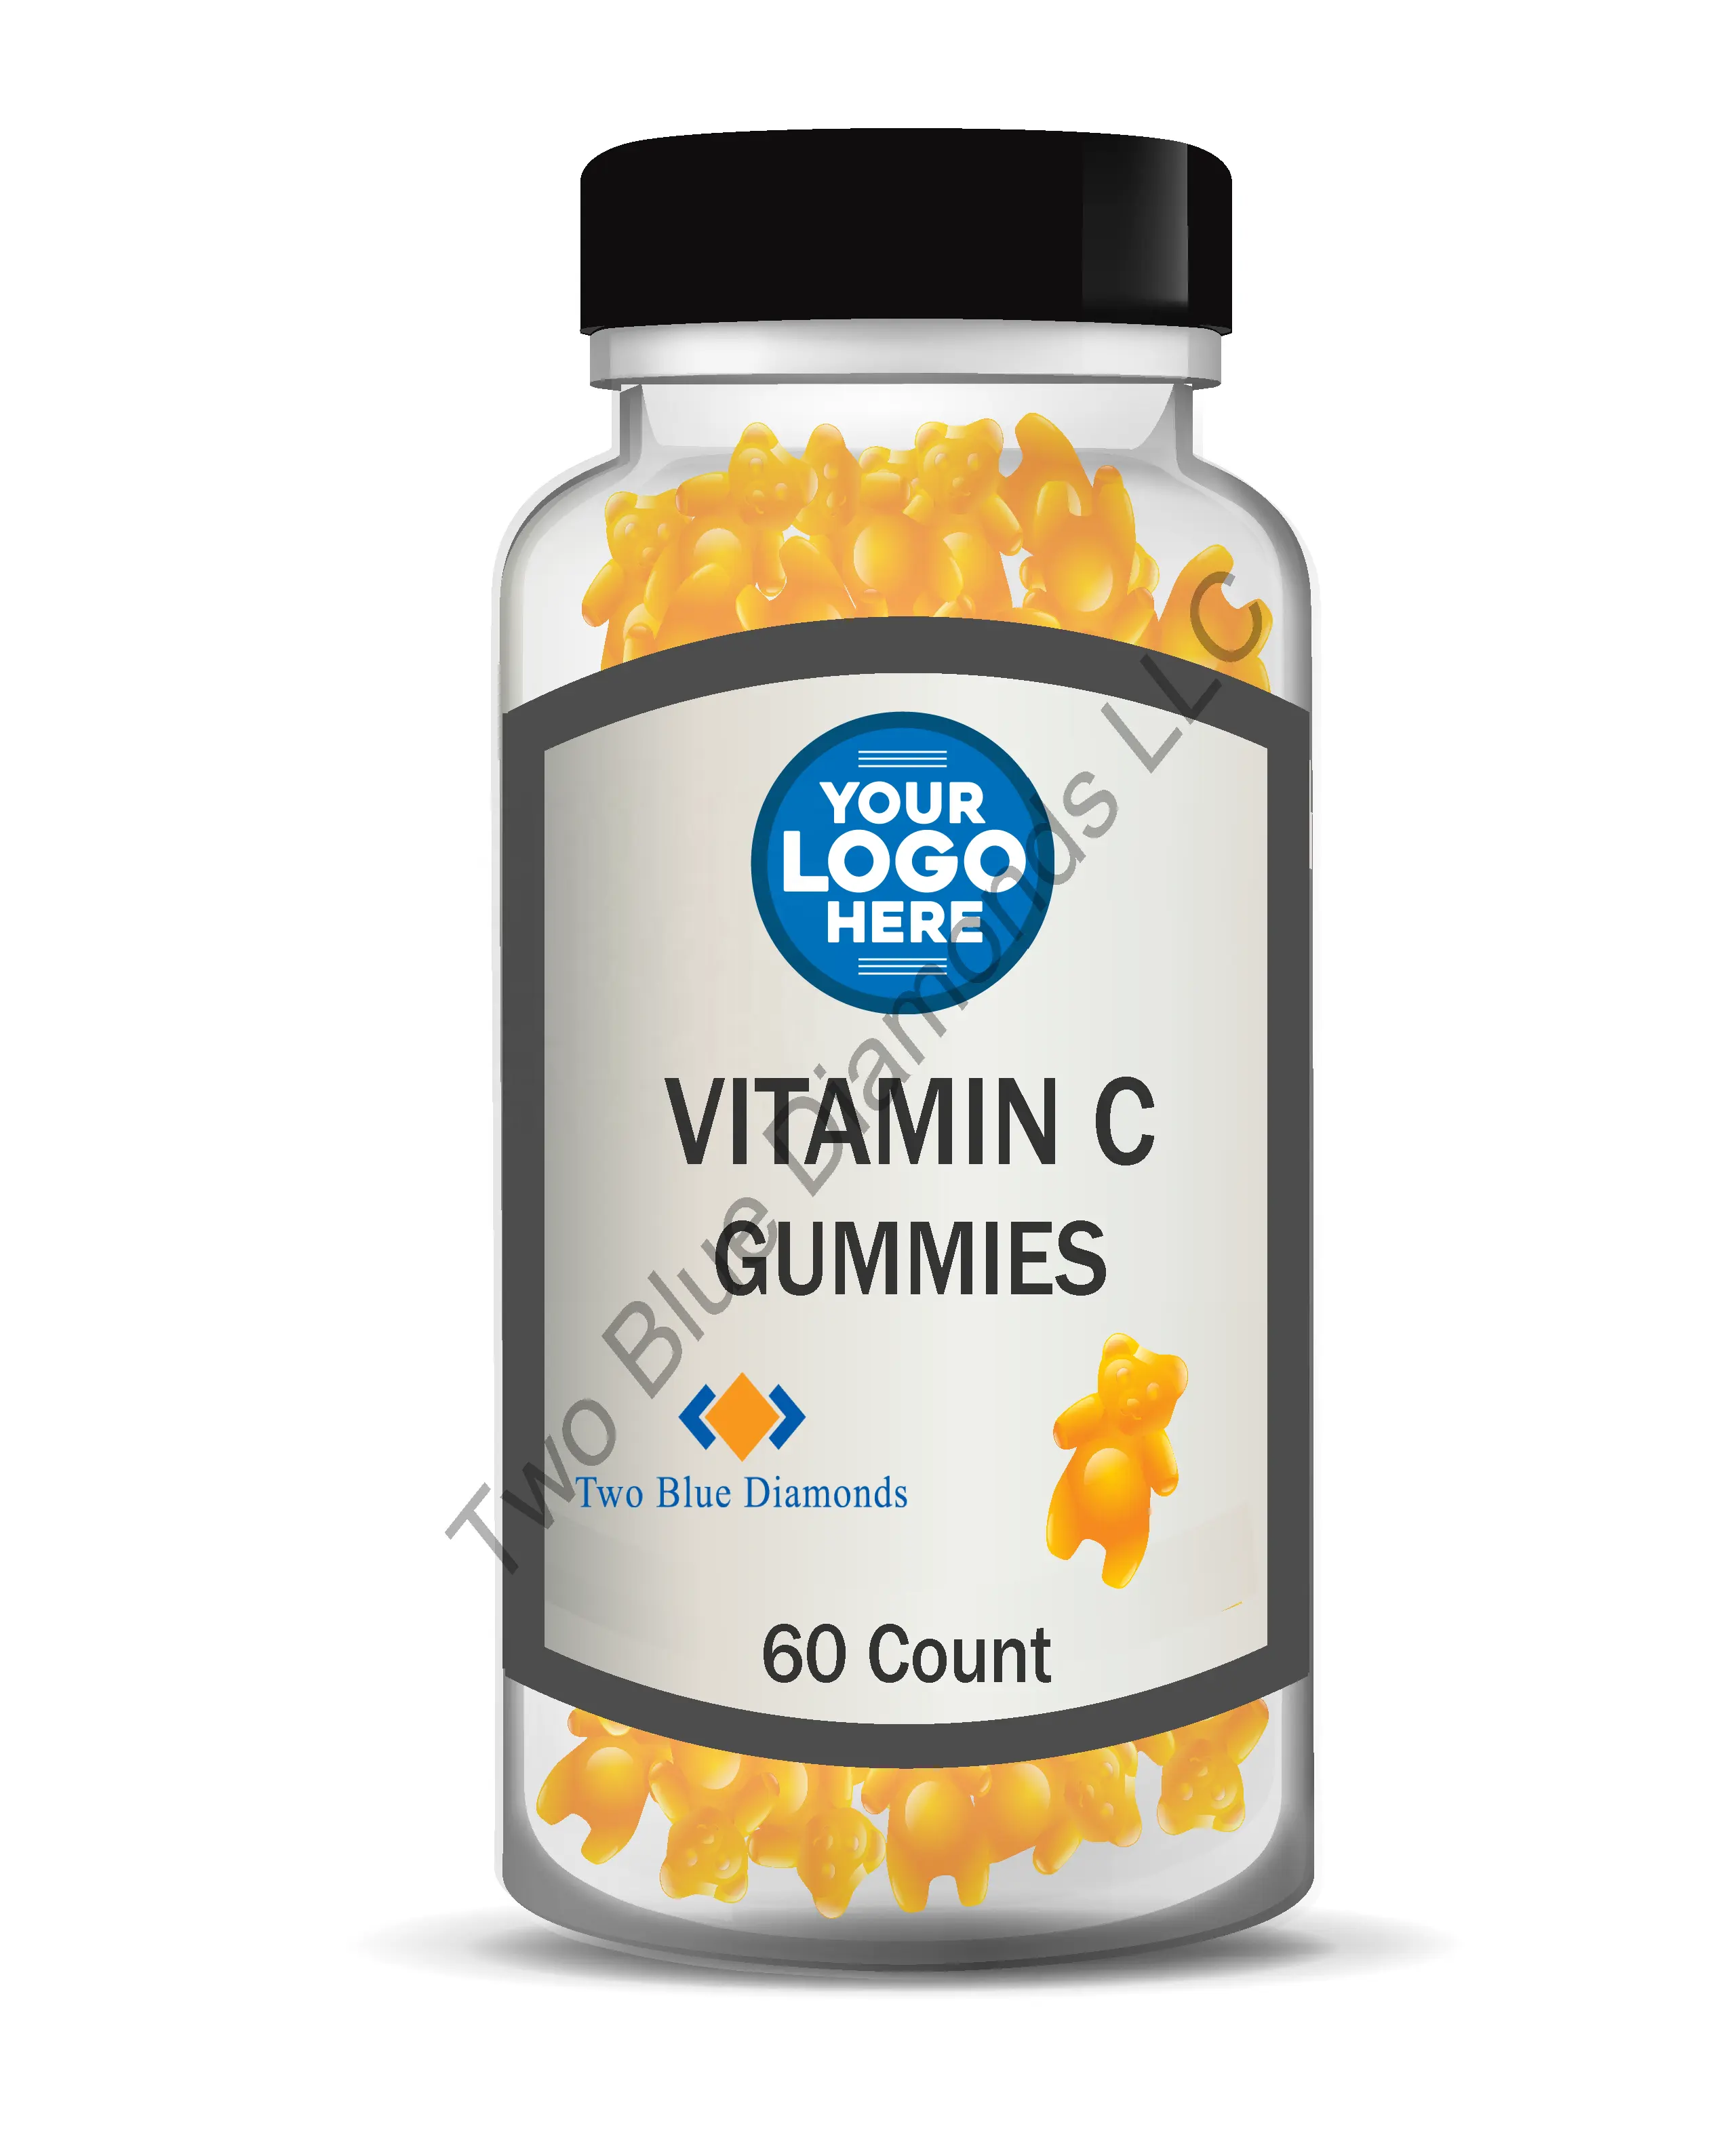 संयुक्त राज्य अमेरिका आपूर्तिकर्ता विटामिन सी Gummies 25 मिलीग्राम प्रति चिपचिपा THC मुफ्त 60 या 100 गिनती निजी लेबल खाद्य ग्रेड प्रतिरक्षा समर्थन सभी प्राकृतिक